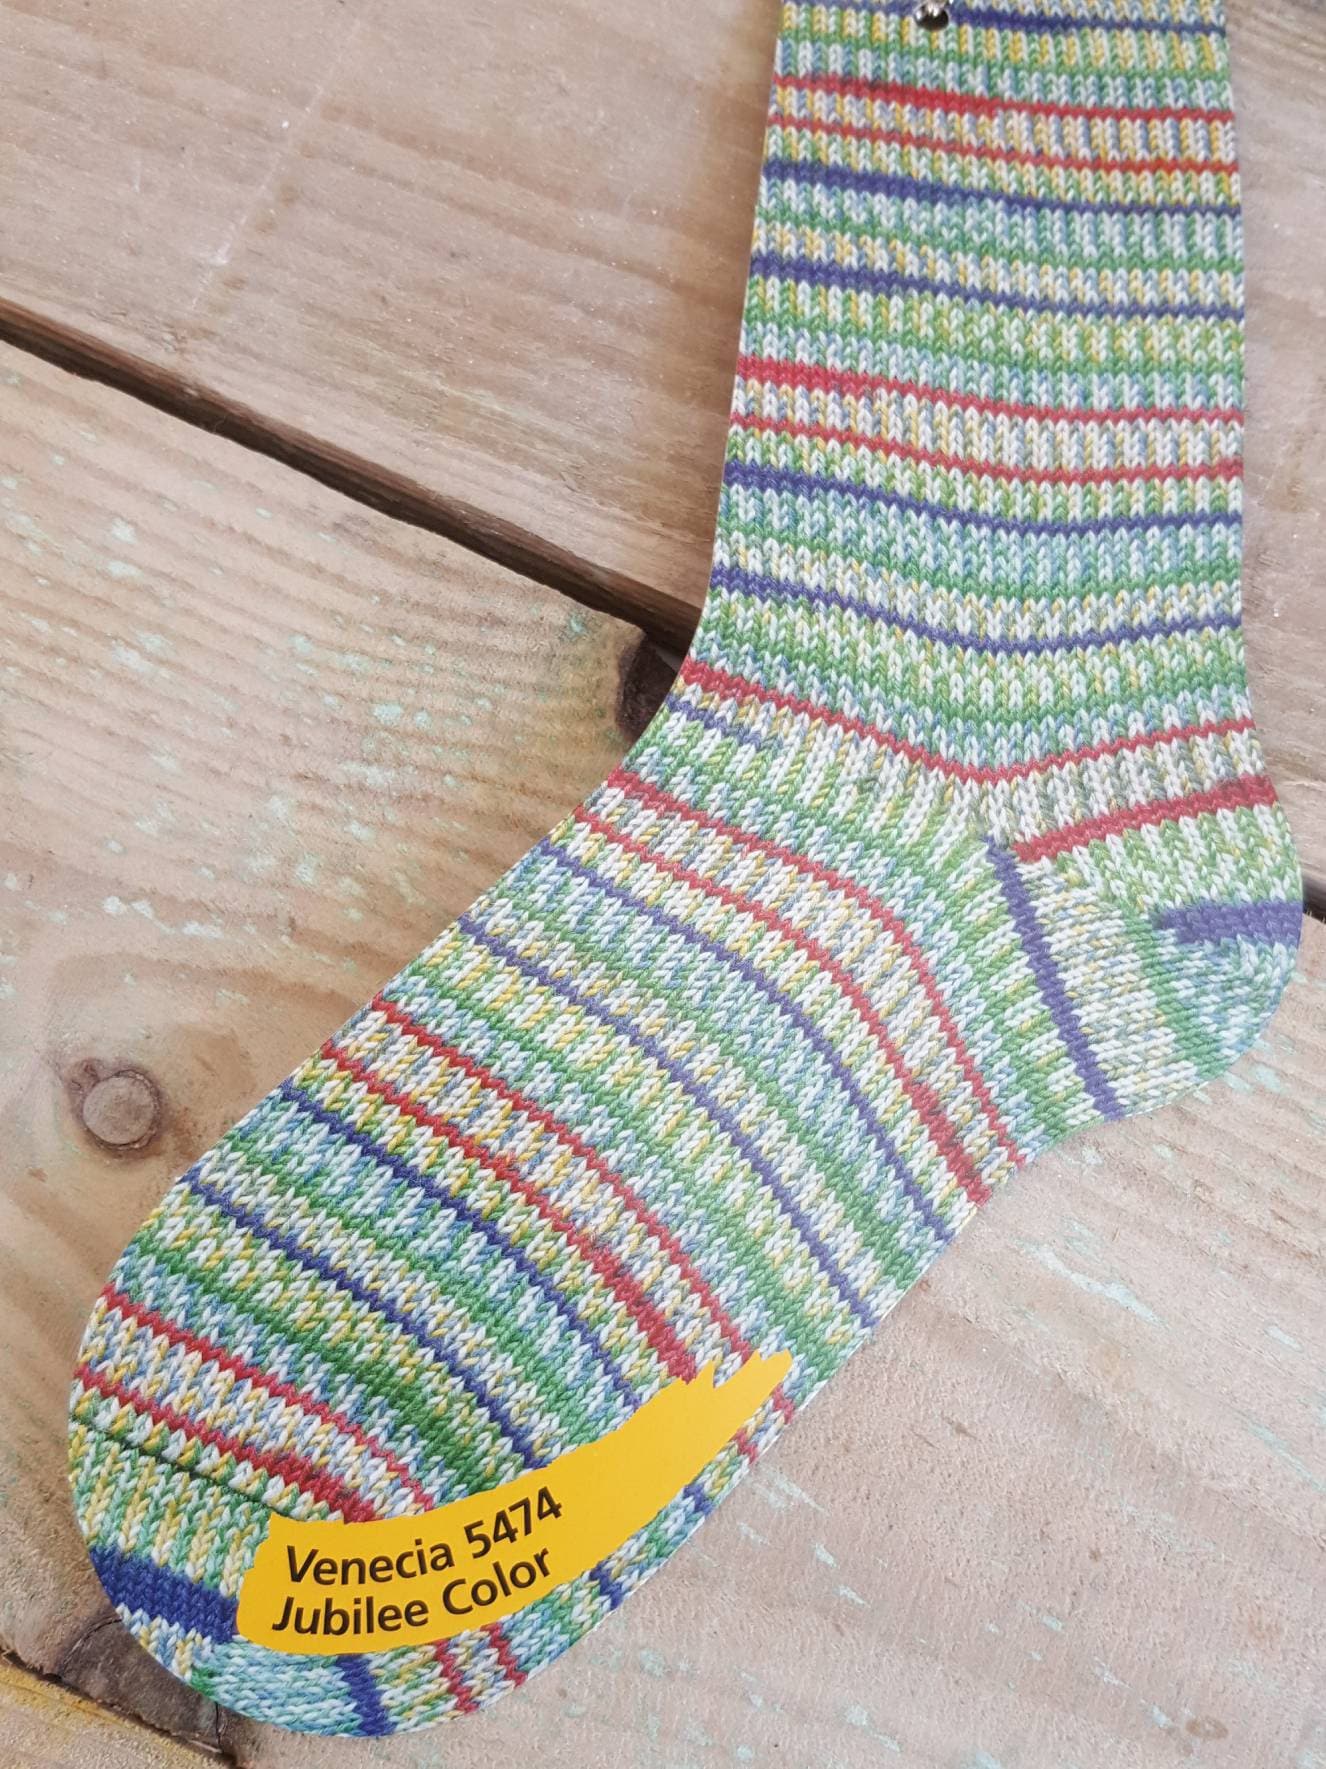 Self Patterning Sock Yarn, Regia 4 Ply, Jubilee Color, Venice 5474, 100g